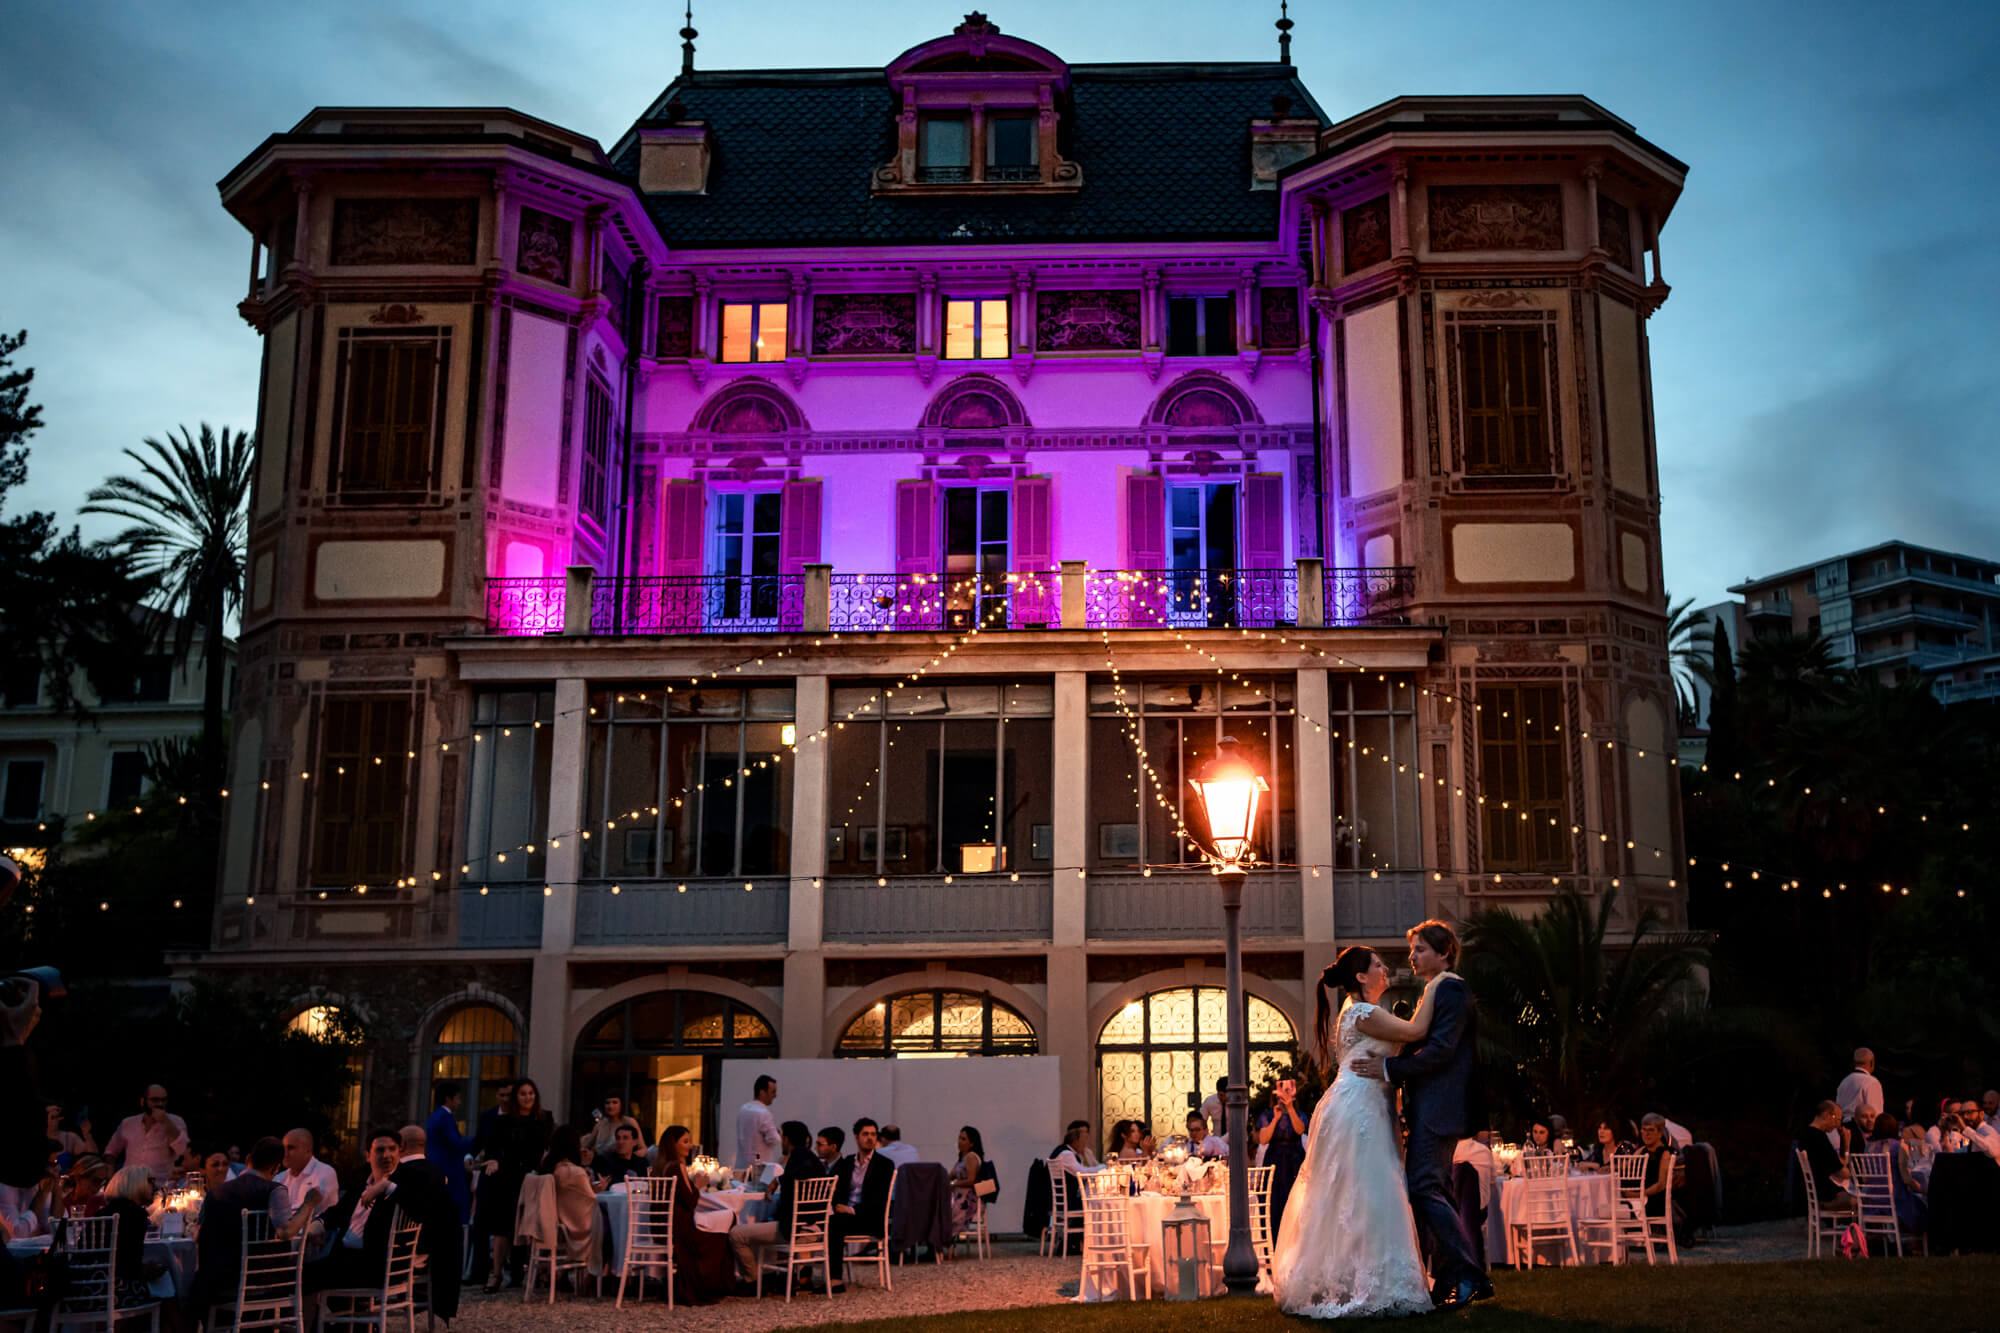 una foto del ballo degli sposi durante un matrimonio a villa nobel, location per matrimoni a sanremo.